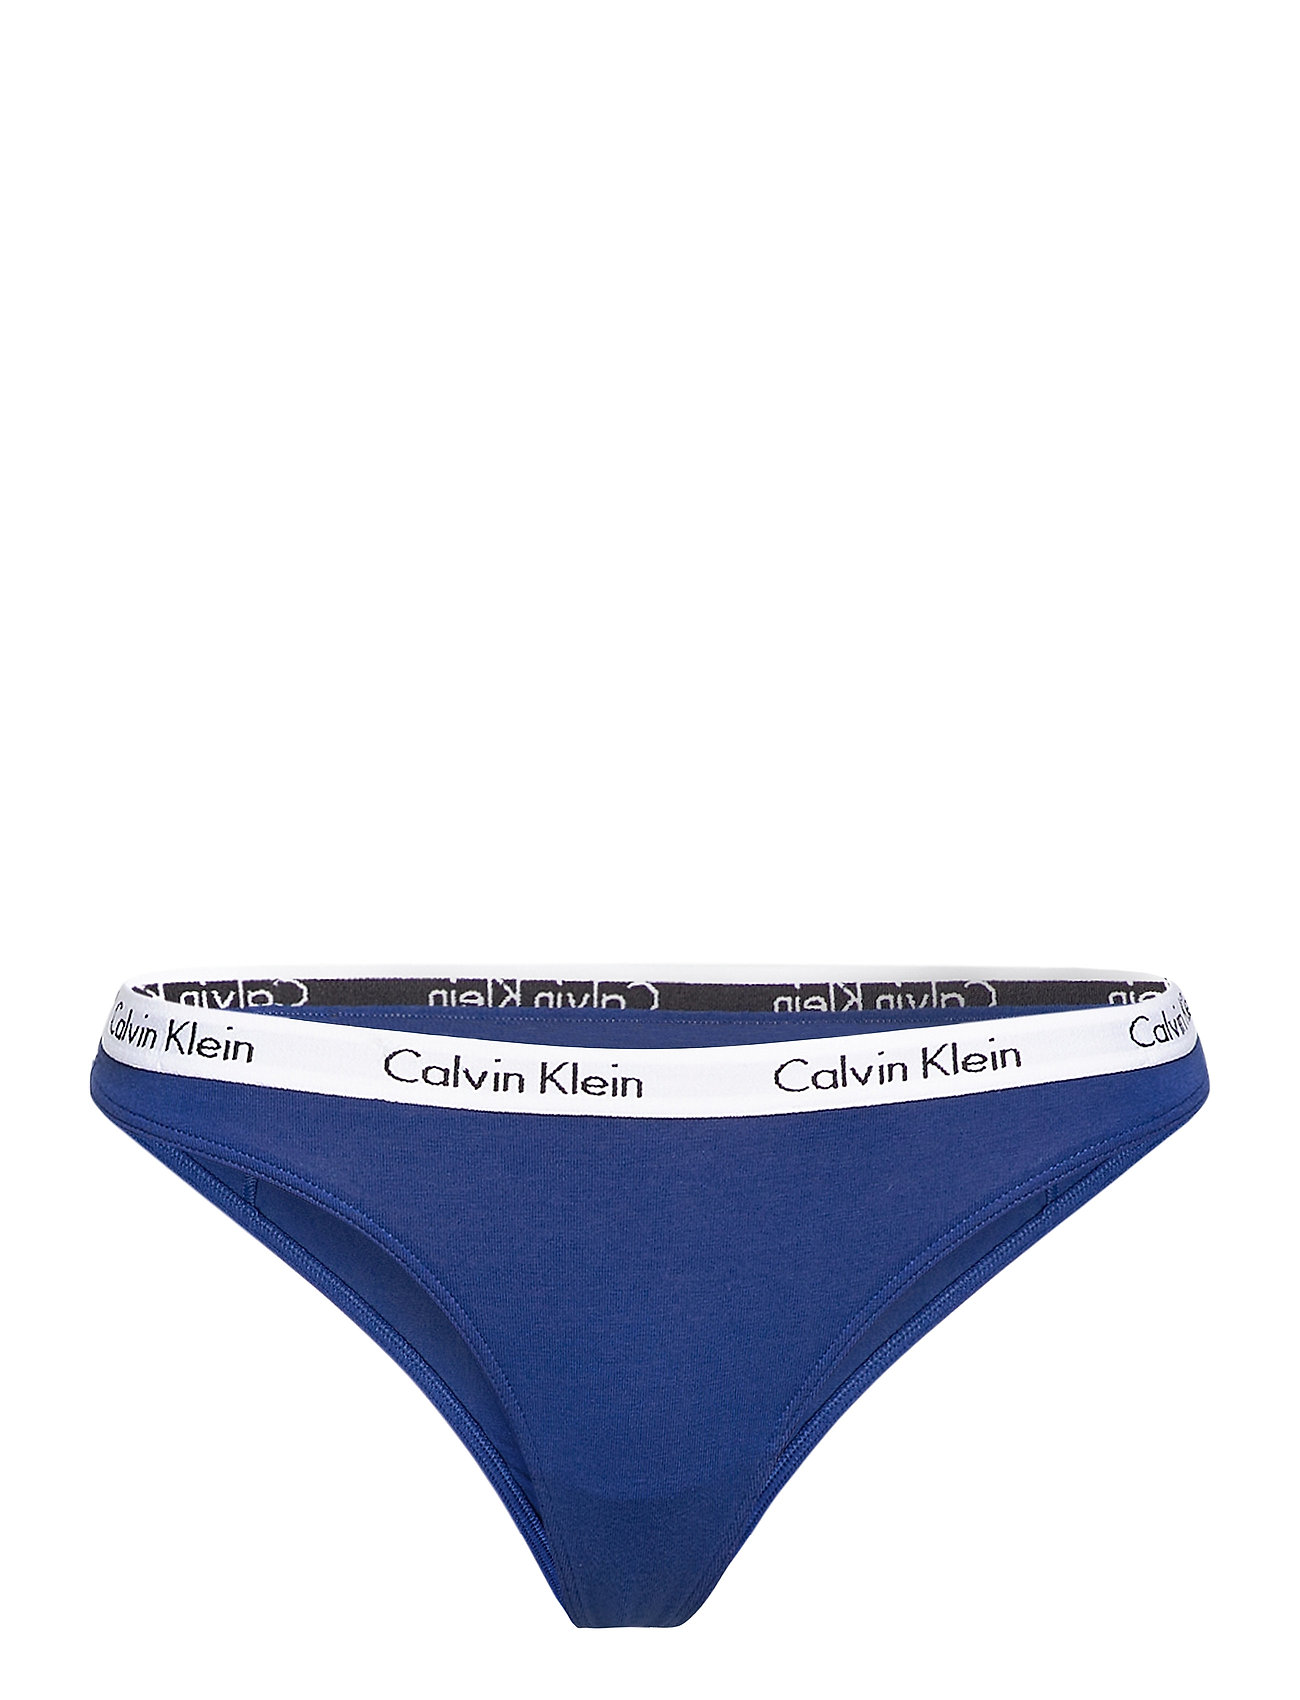 Thong Stringit Alusvaatteet Sininen Calvin Klein